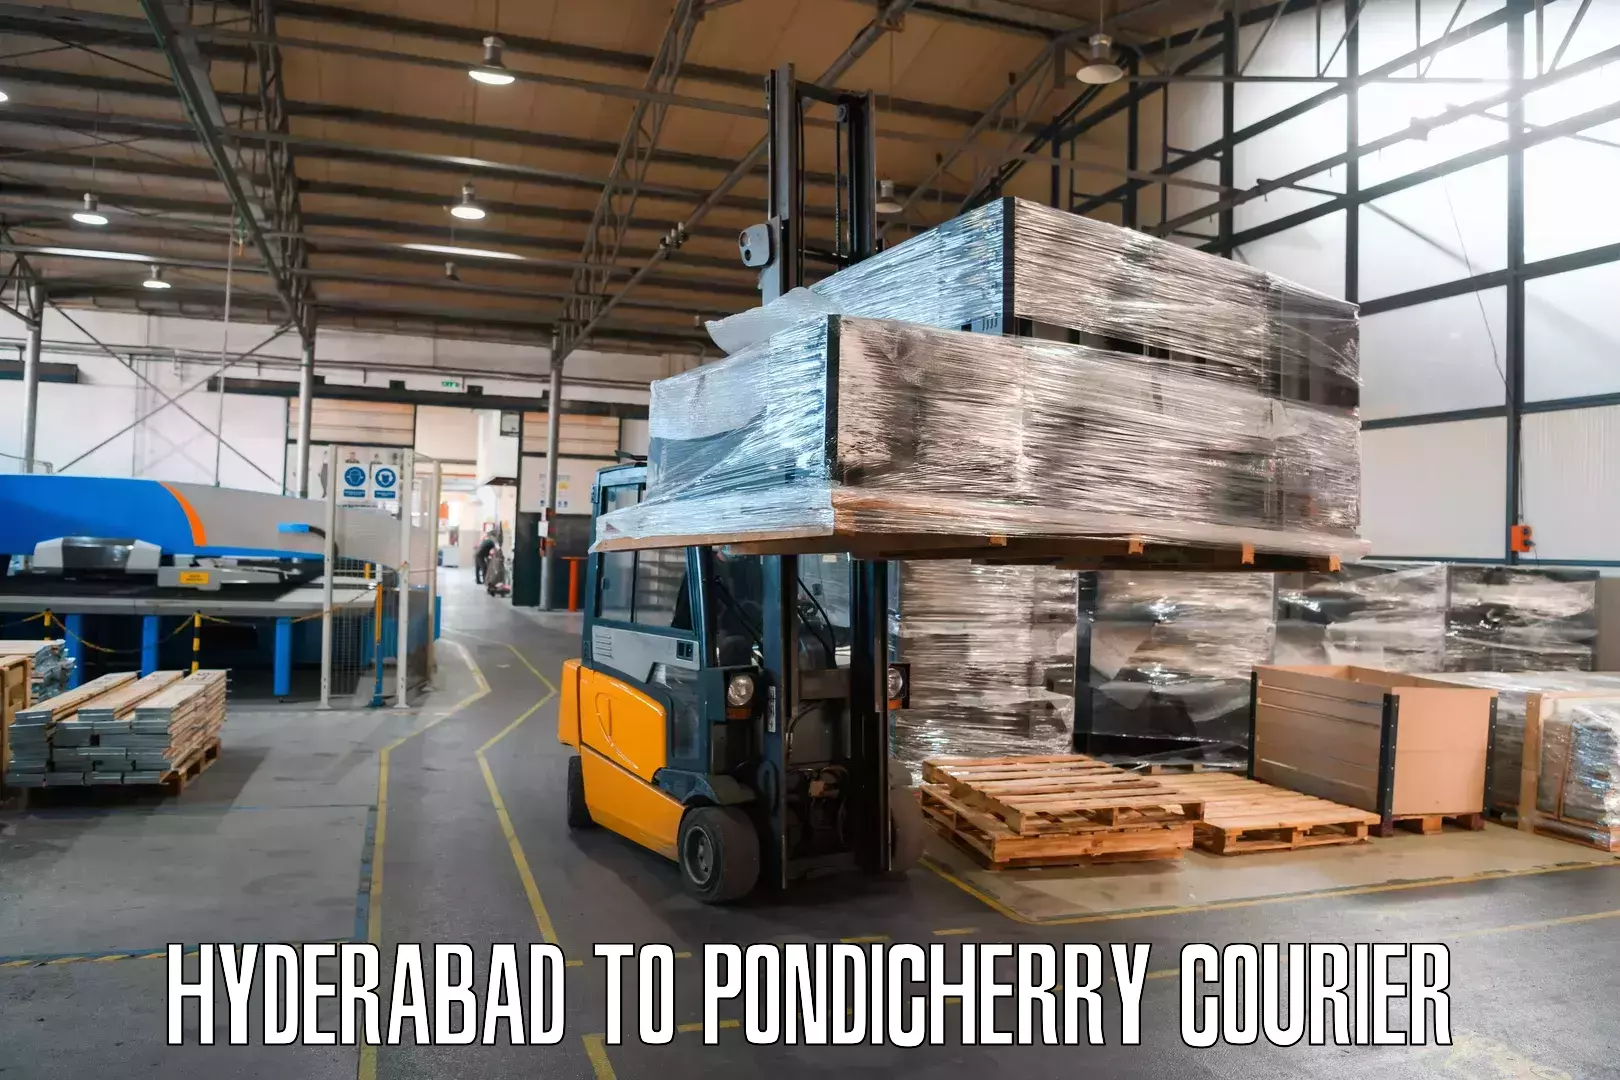 Speedy delivery service Hyderabad to Pondicherry